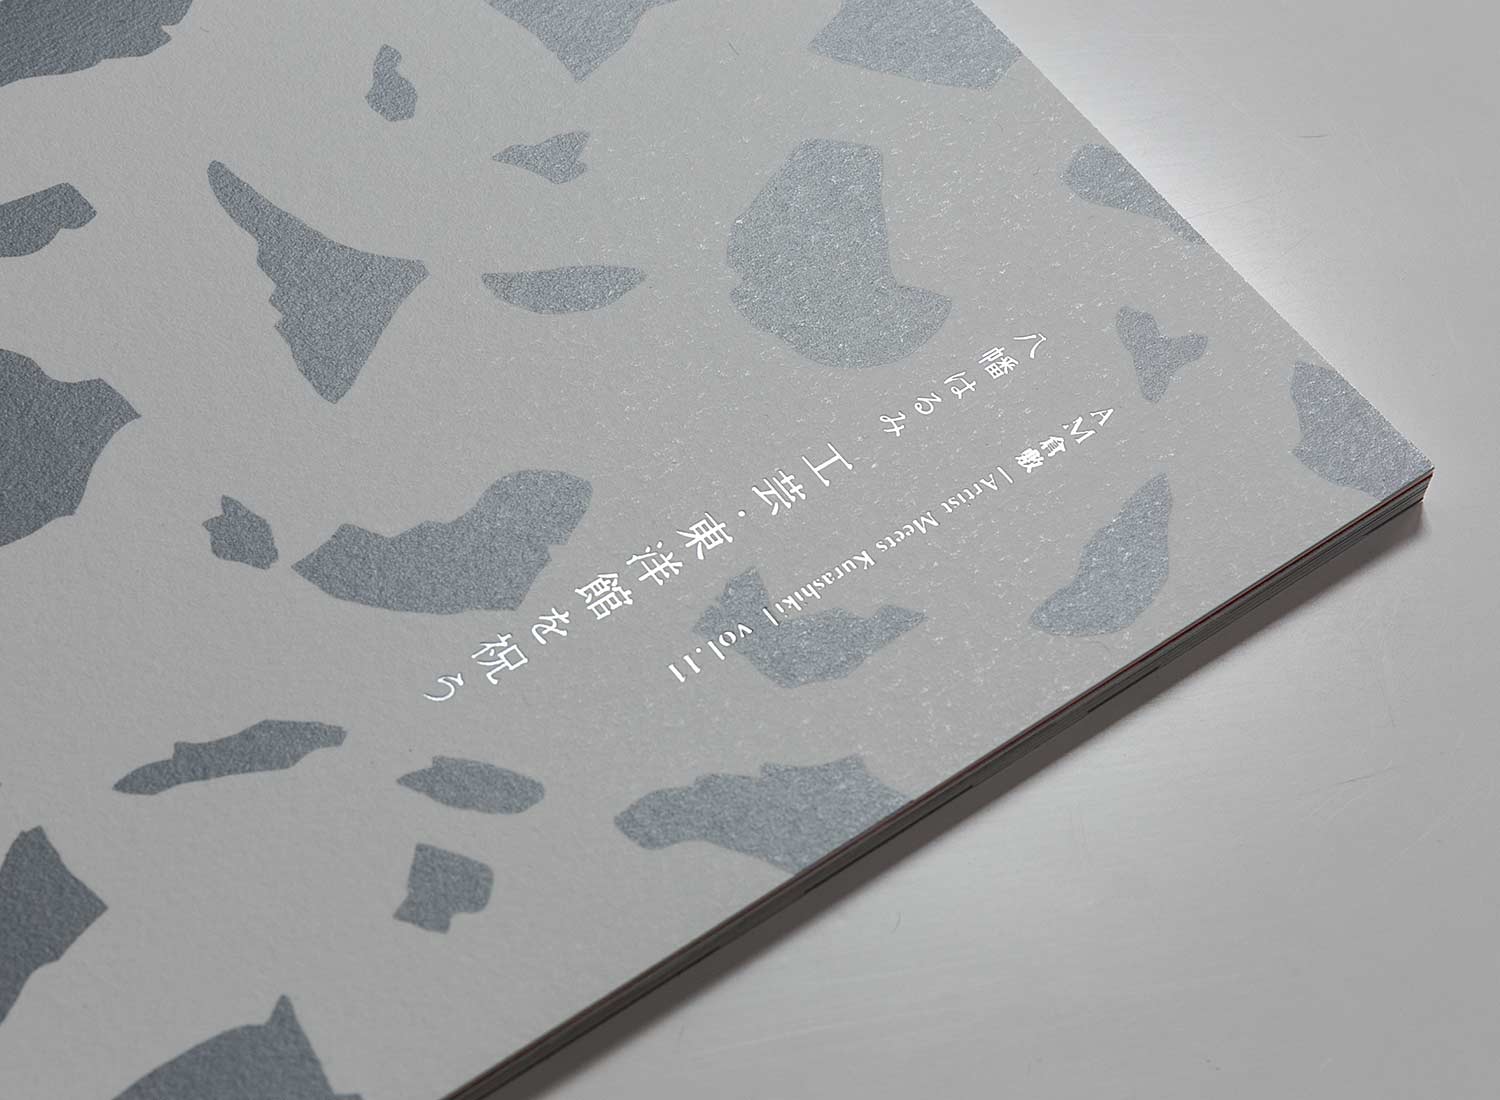 AM倉敷vol.11 八幡はるみ 工芸・東洋館を祝う